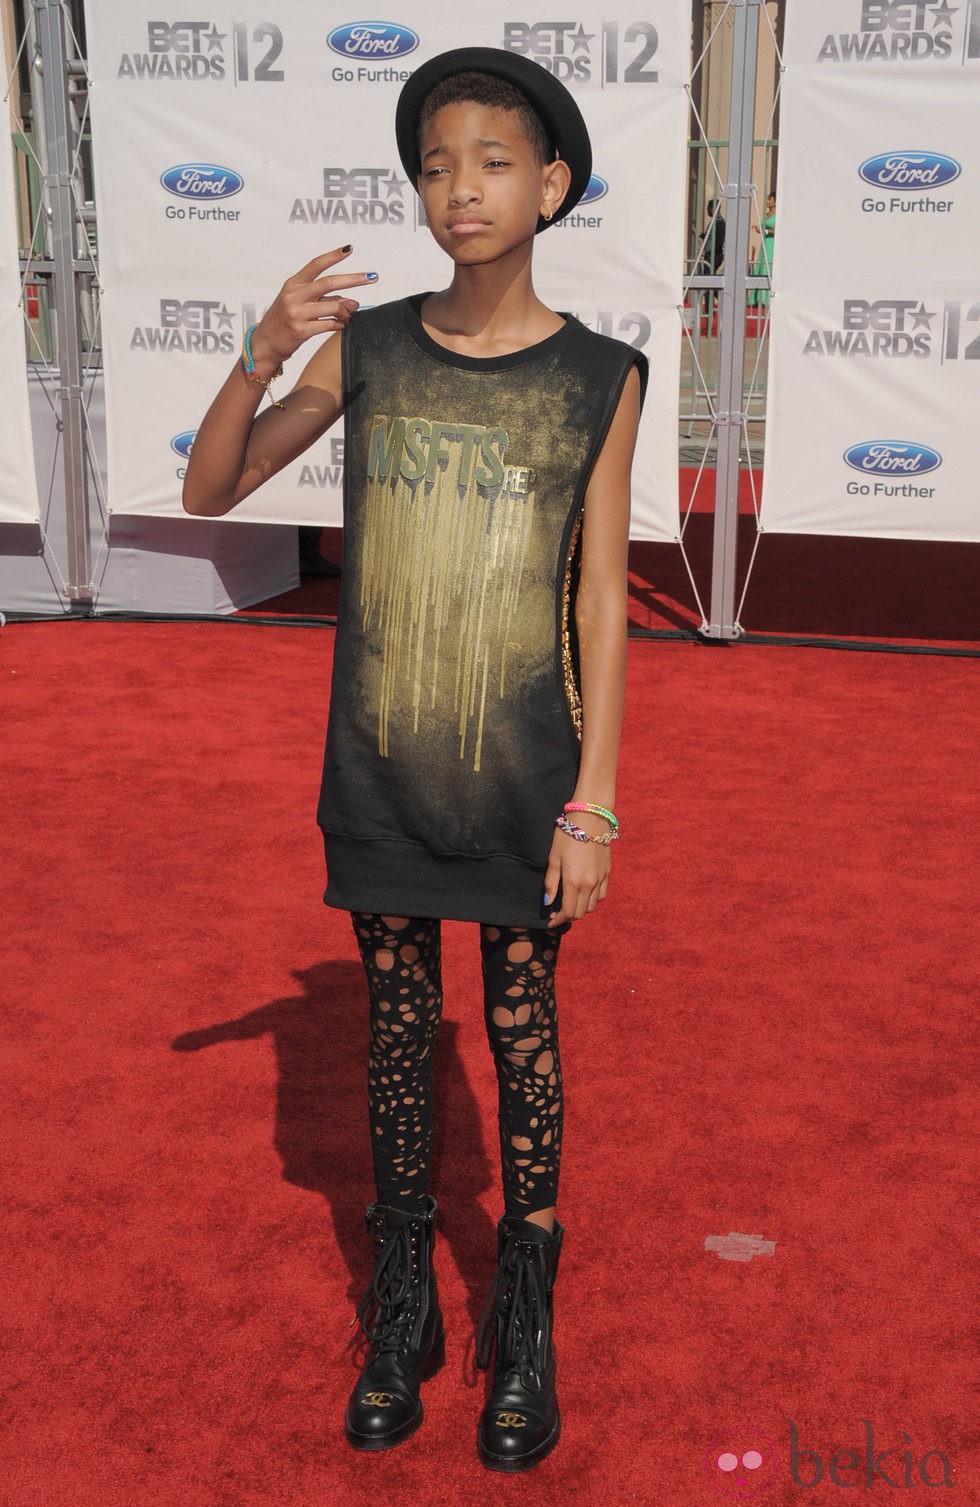 Willow Smith en la alfombra roja de los Bet Awards 2012